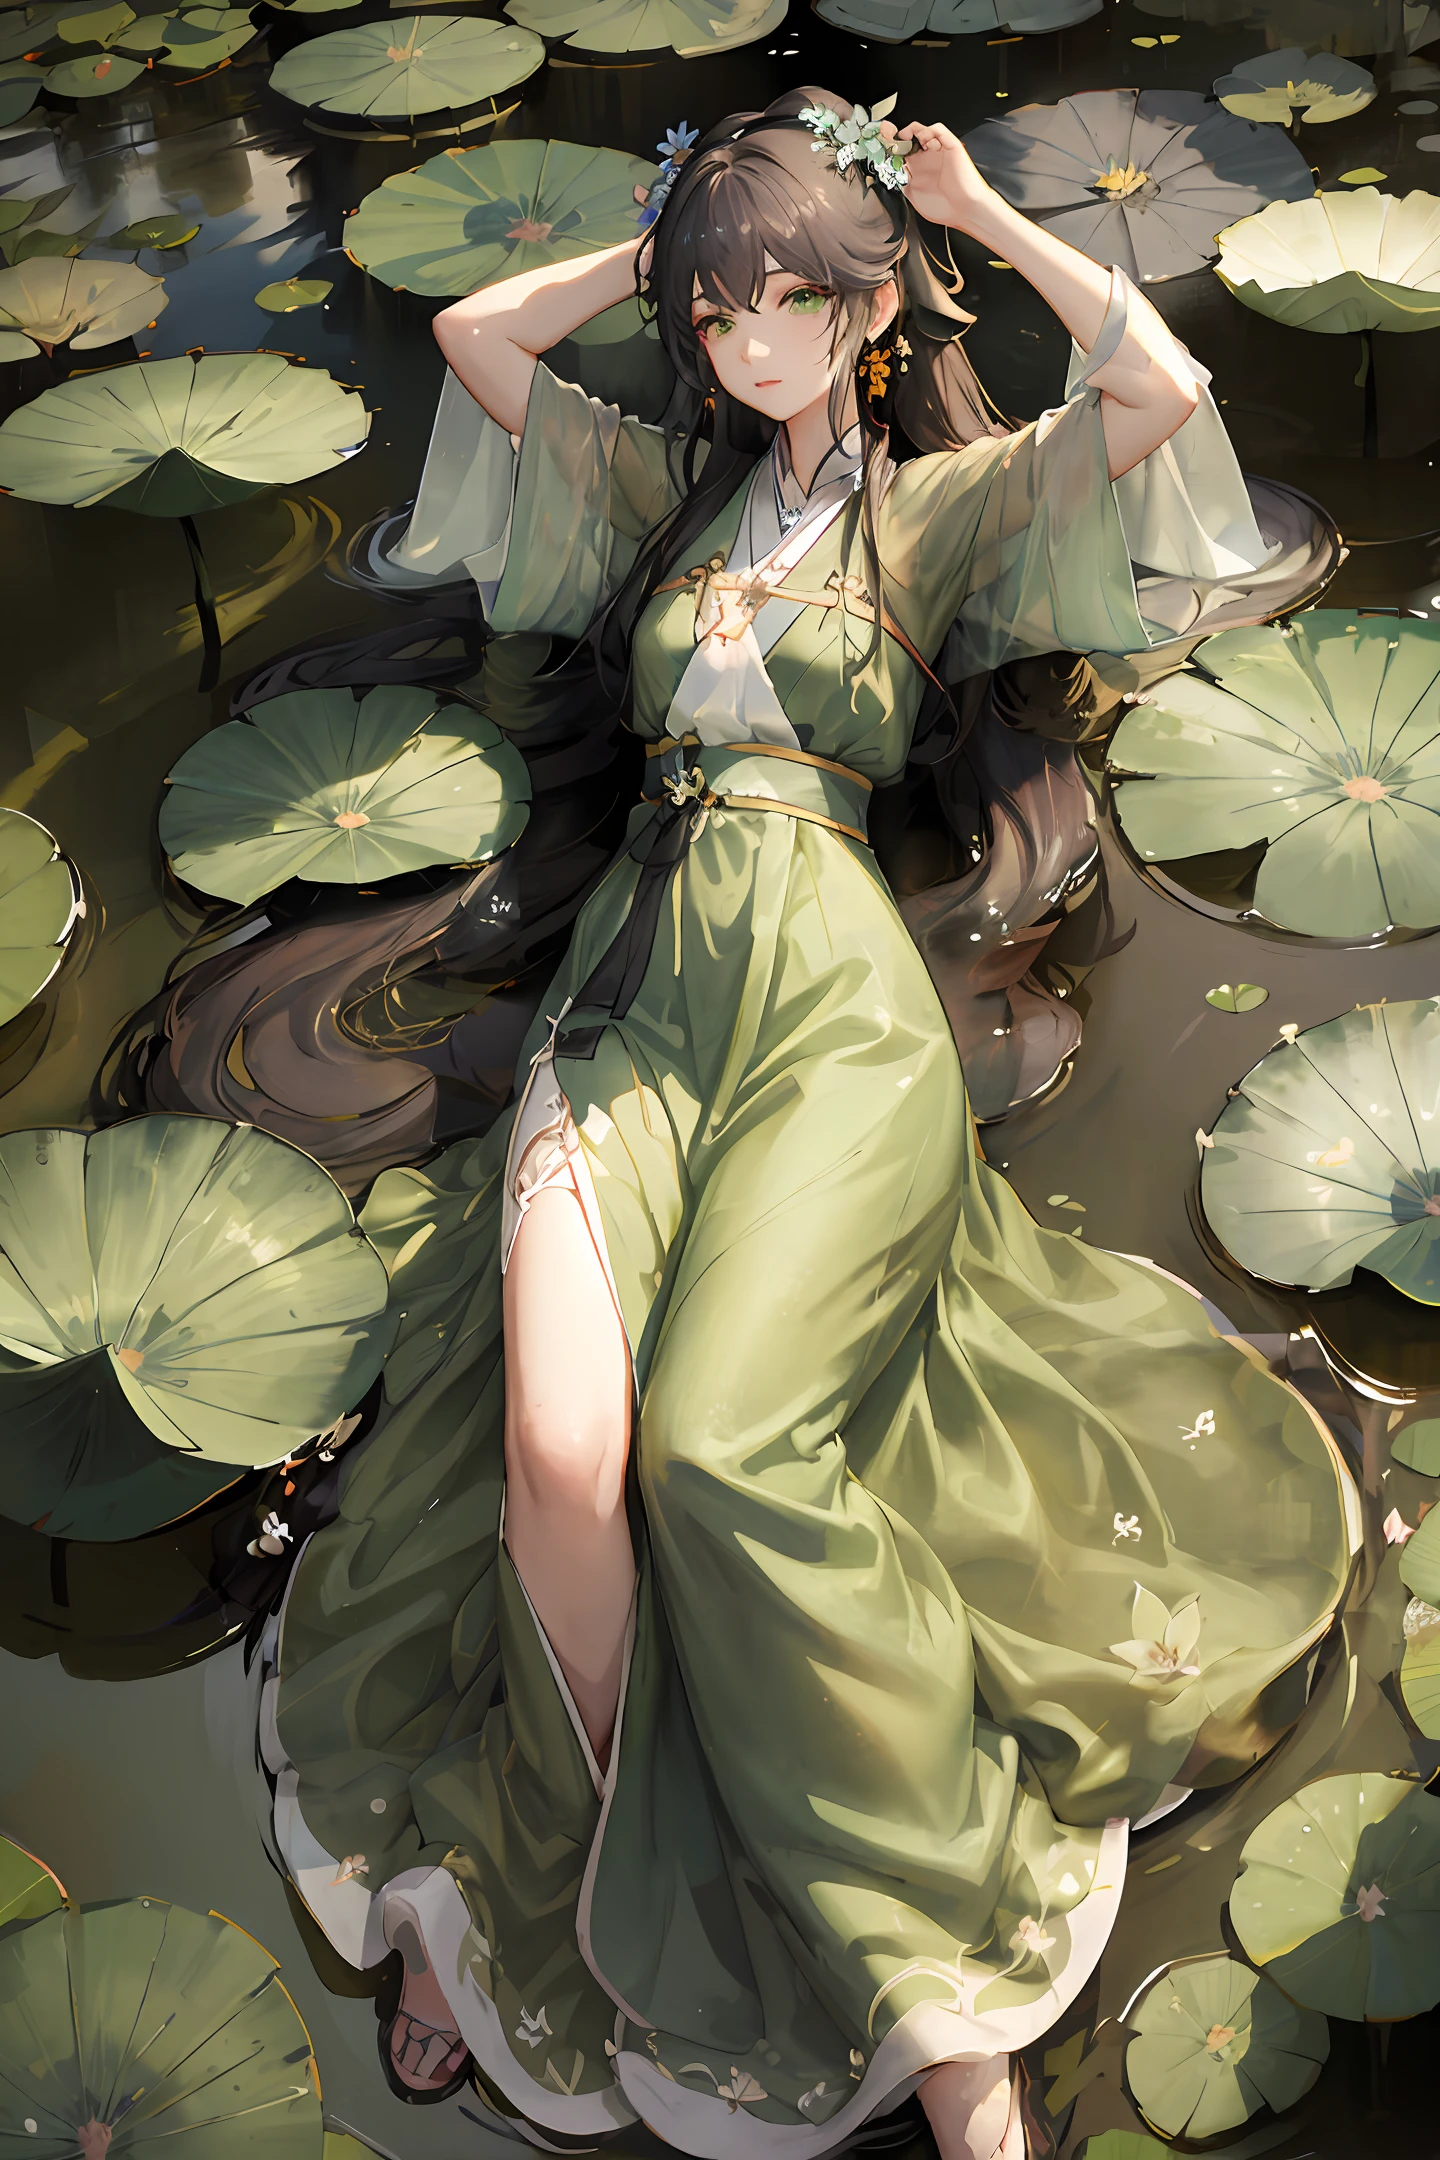 Da liegt eine Frau in einem grünen Kleid auf einem mit Seerosen bedeckten Teich, von Yang J, artwork in the style of guweiz, von Zeng Jing, guweiz on pixiv artstation, guweiz, guweiz on artstation pixiv, Palast ， Ein Mädchen in Hanfu, von Li Song, wunderschöne digitale Kunstwerke, by Chen Lin